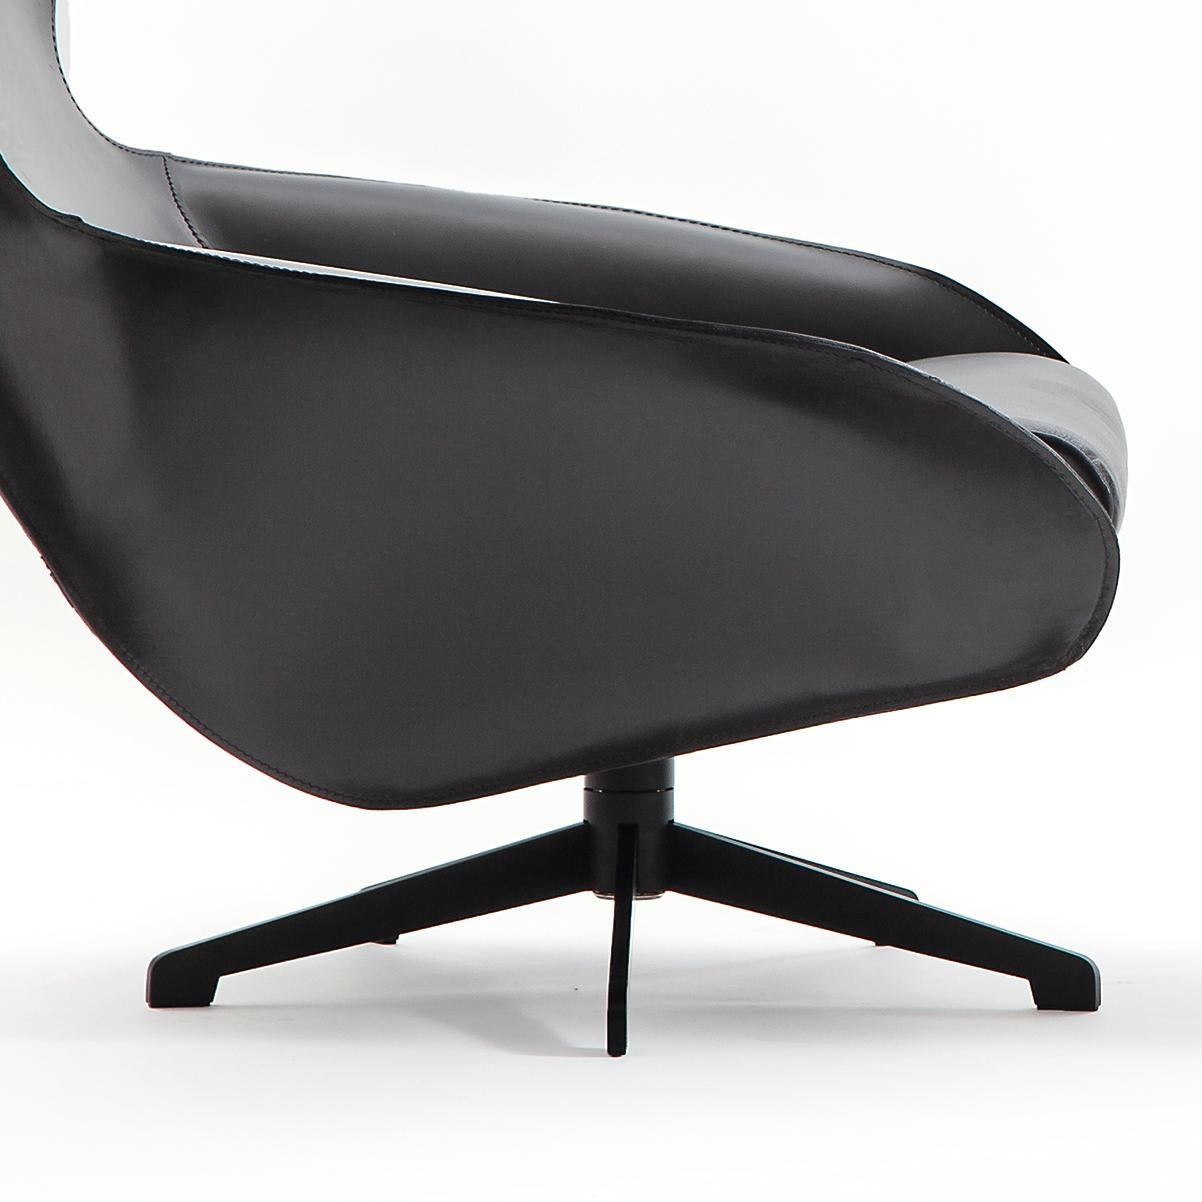 Loungesessel, entworfen von Mario Bellini im Jahr 2015. Hergestellt von Cassina in Italien.

Die geräumige und einladende cab lounge ist eine Neuauflage des cab chair-Konzepts. Der Cab Lounge Sessel ist ein Meisterwerk der Handwerkskunst und